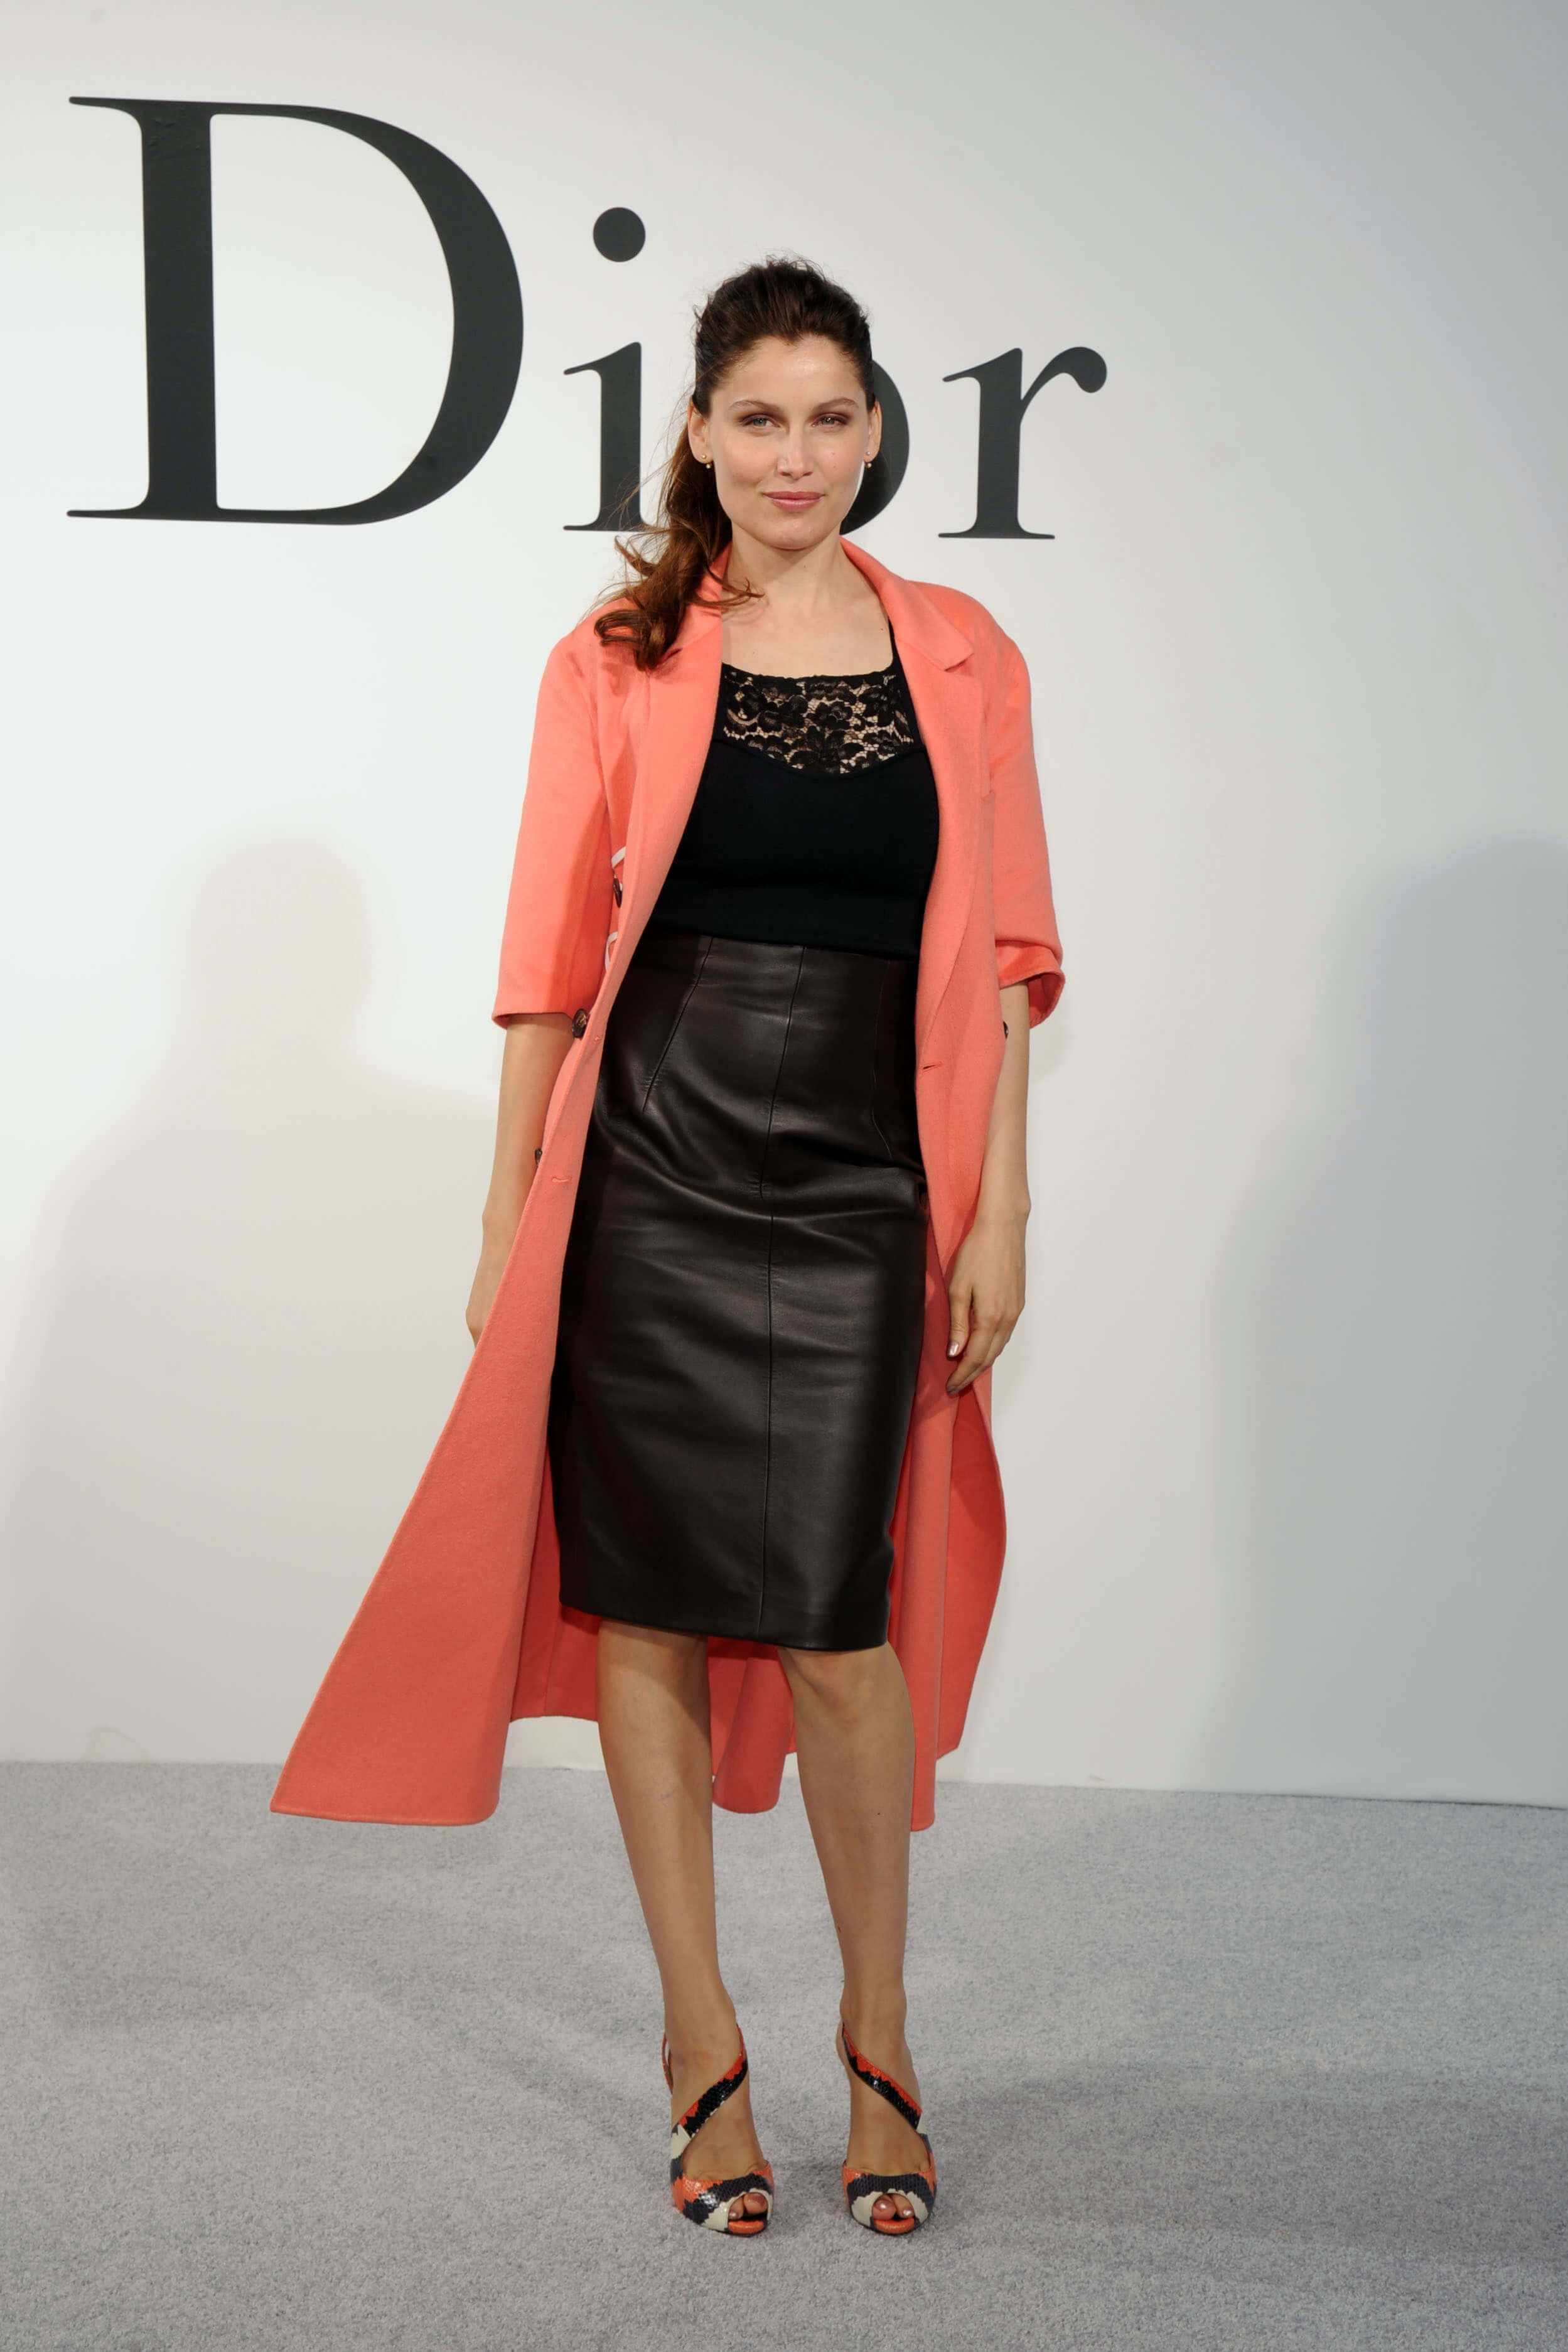 Laetitia Casta at the Christian Dior show during Paris Fashion Week